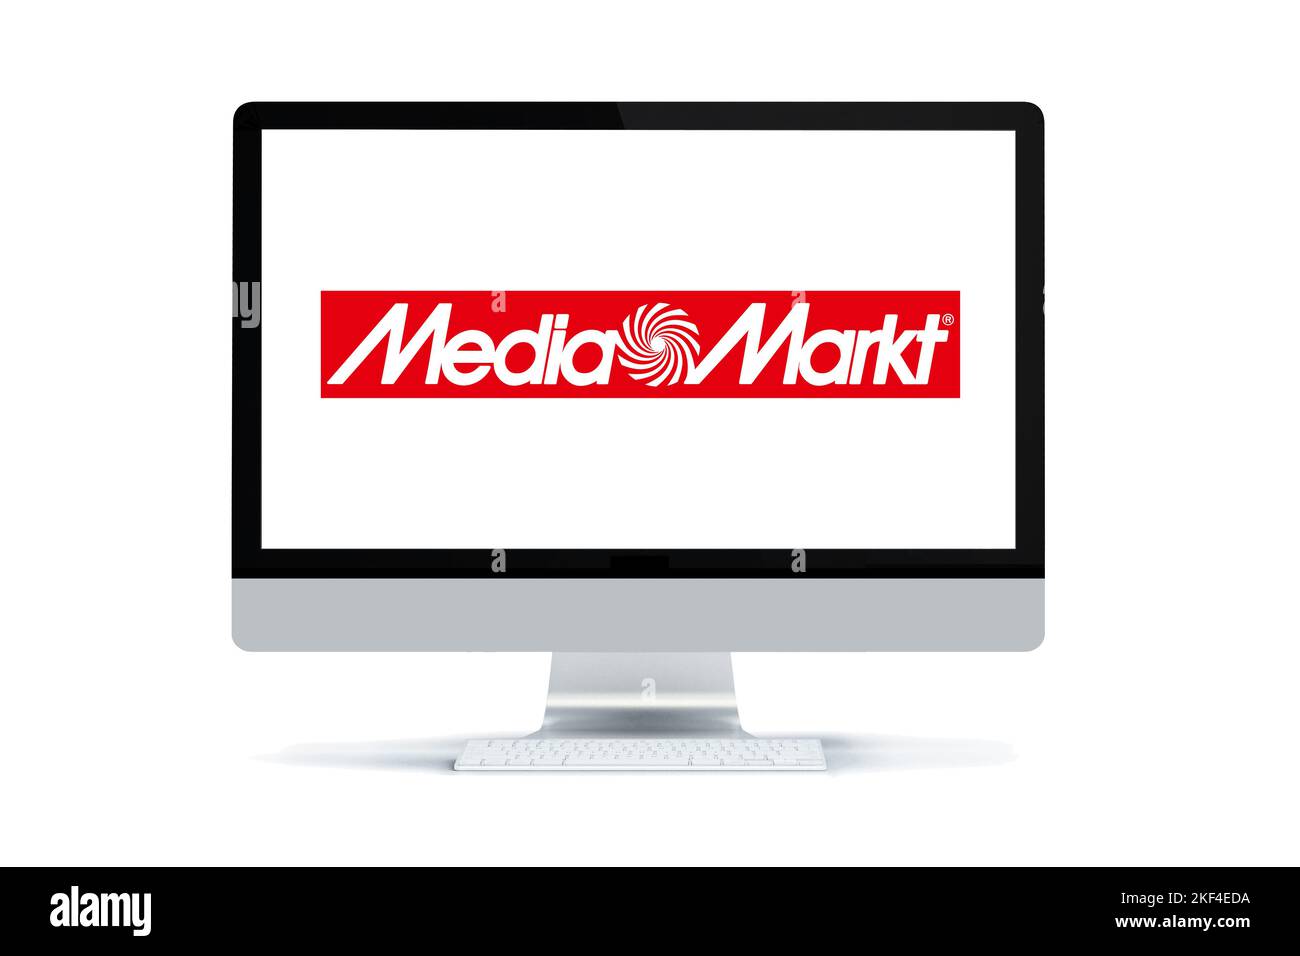 Das Logo der Firma Media-Markt, Mediamarkt. Nur zur redaktionellen Veröffentlichung! Stock Photo